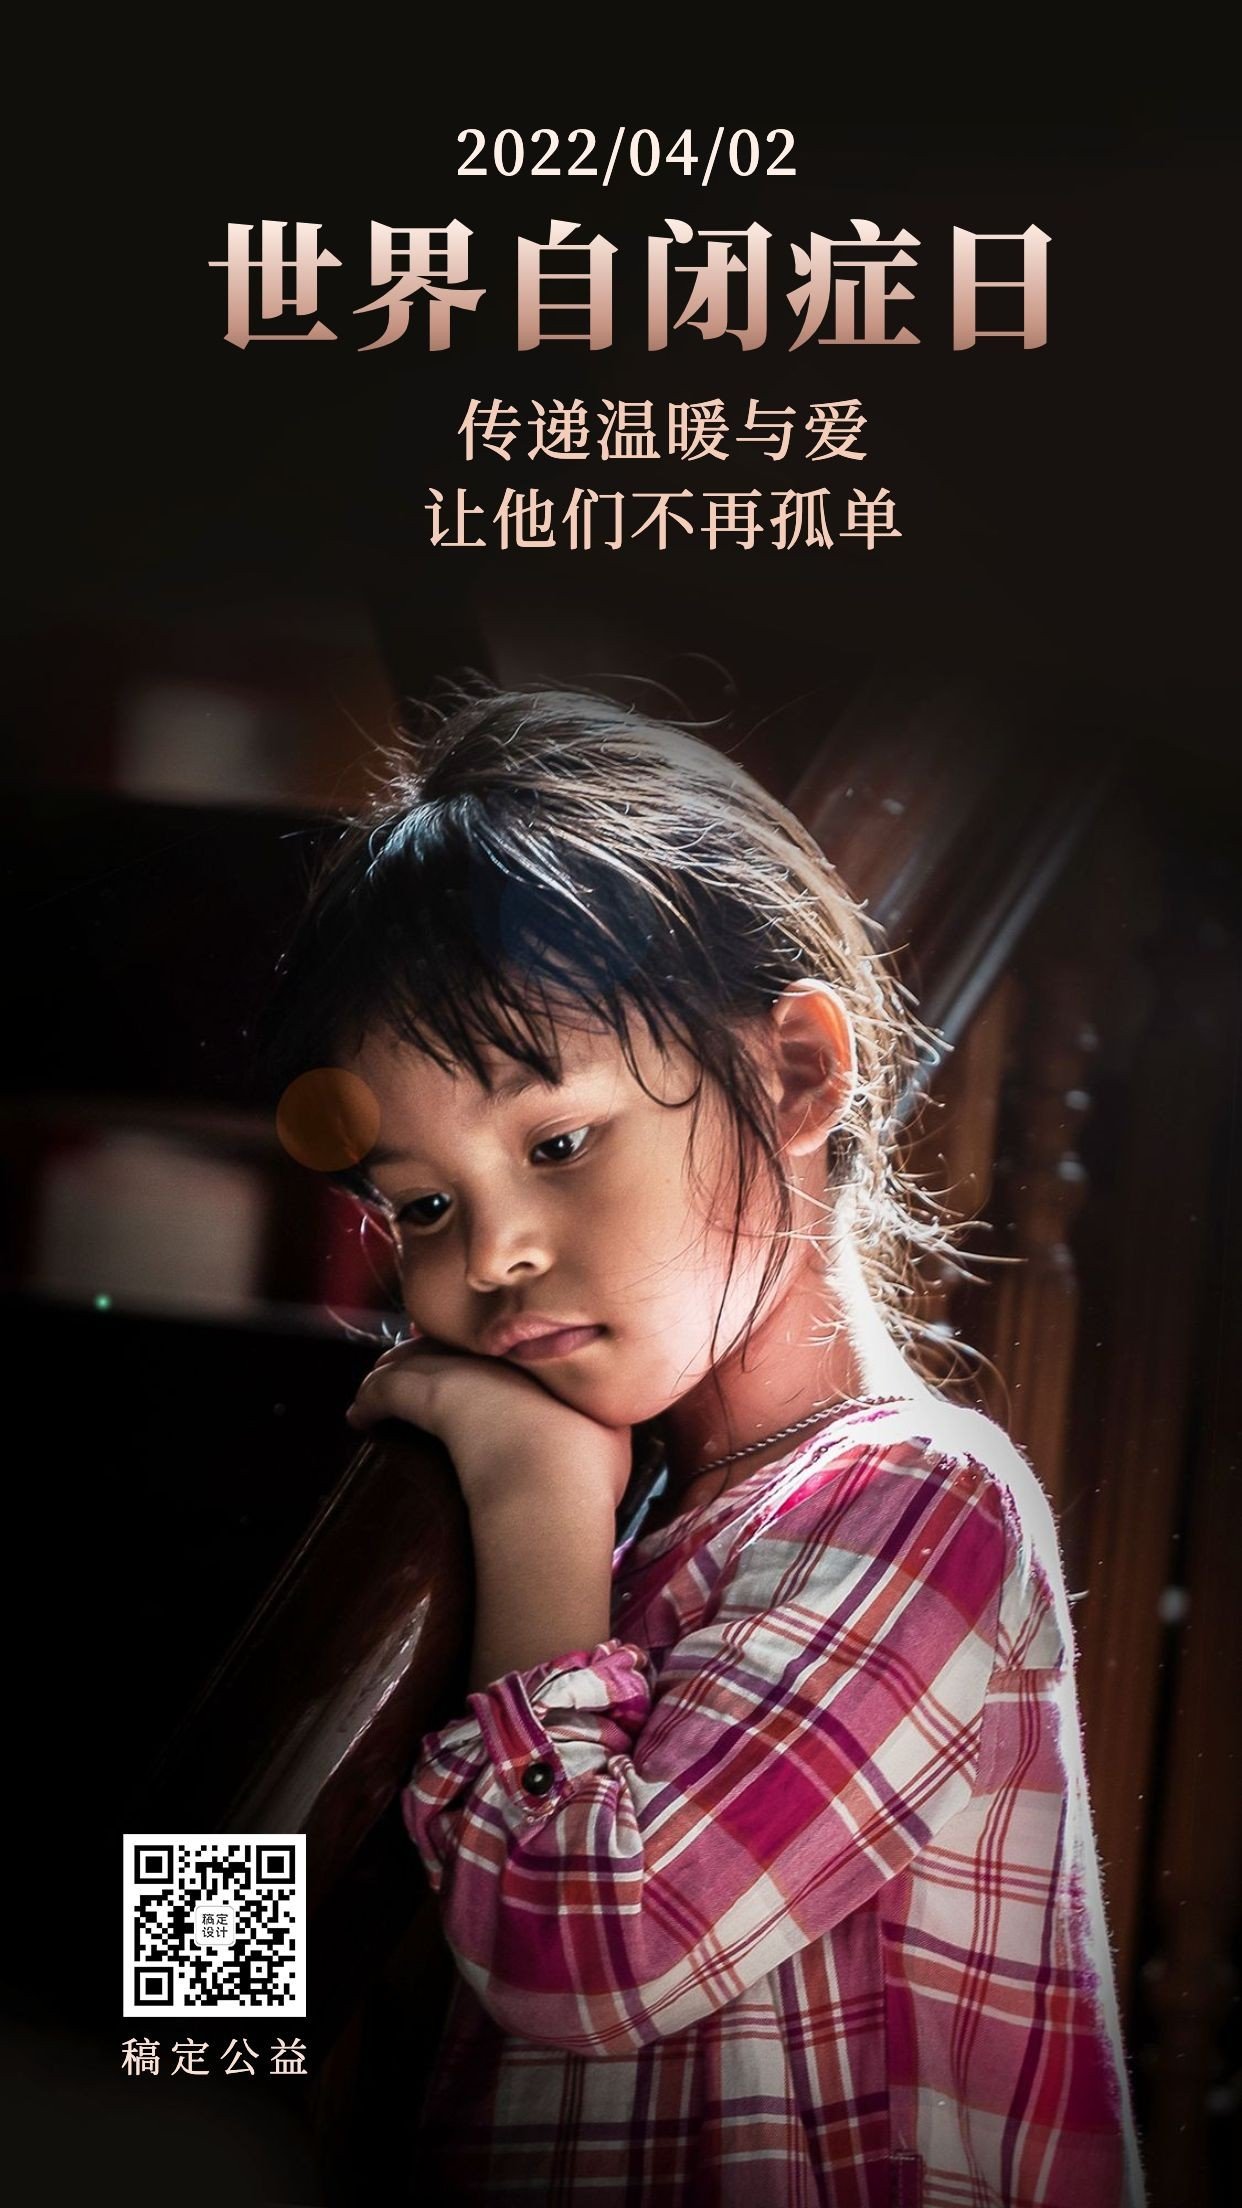 世界自闭症日关爱儿童宣传实景手机海报预览效果